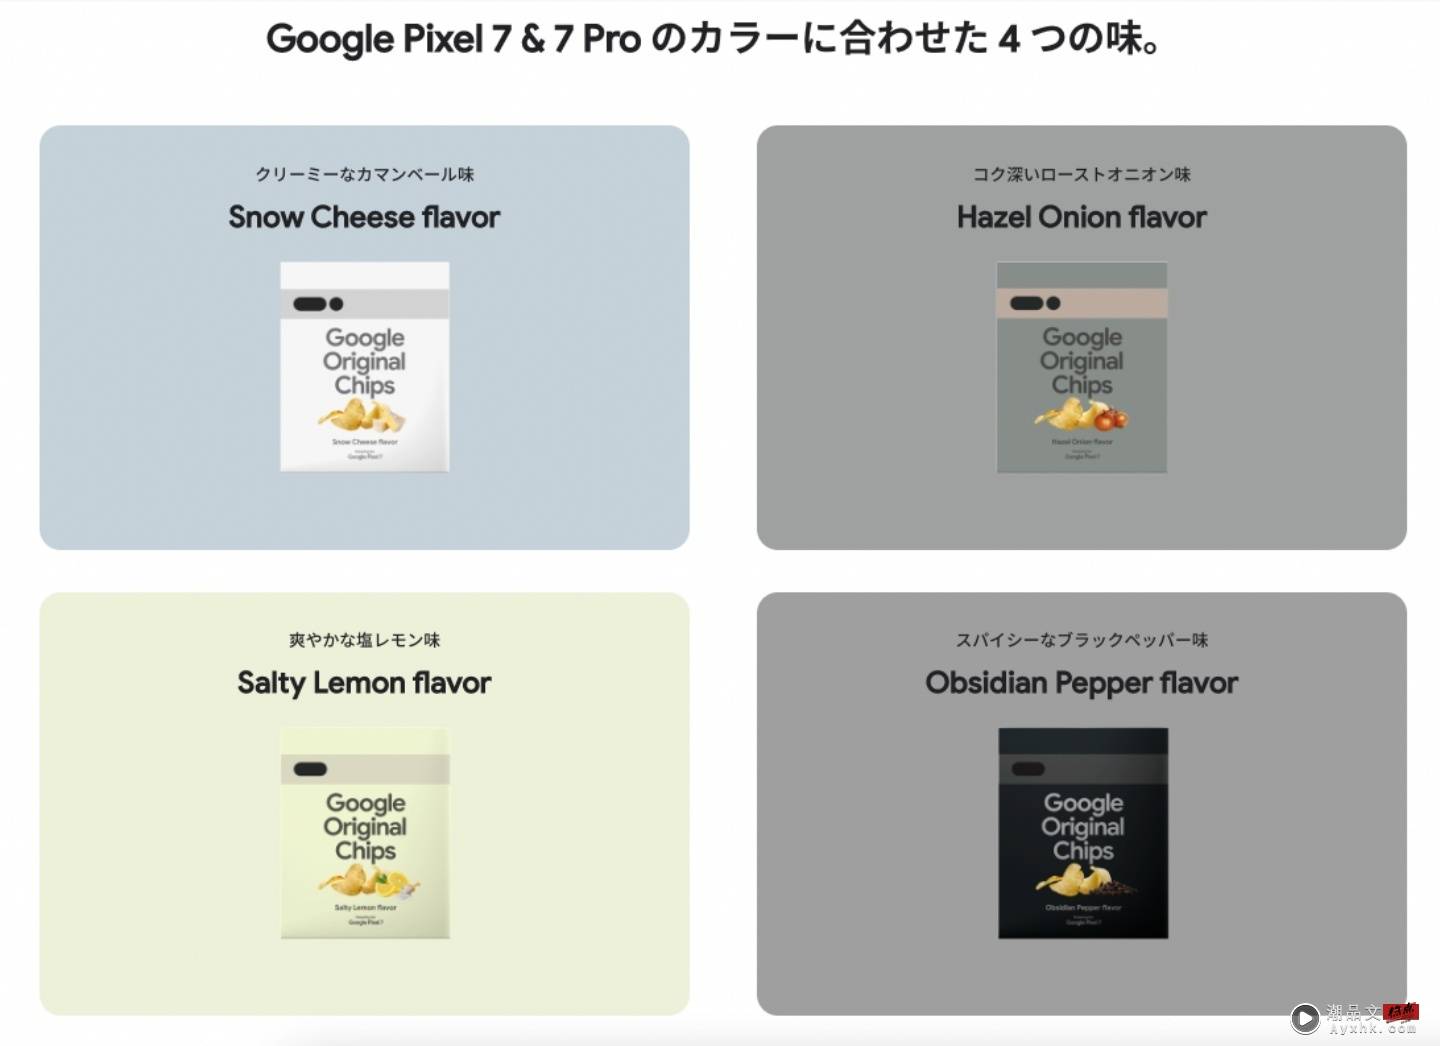 为 Pixel 7 预热！Google 推出四种口味的 Original Chips 洋芋片 2,000 份只送不卖 数码科技 图3张